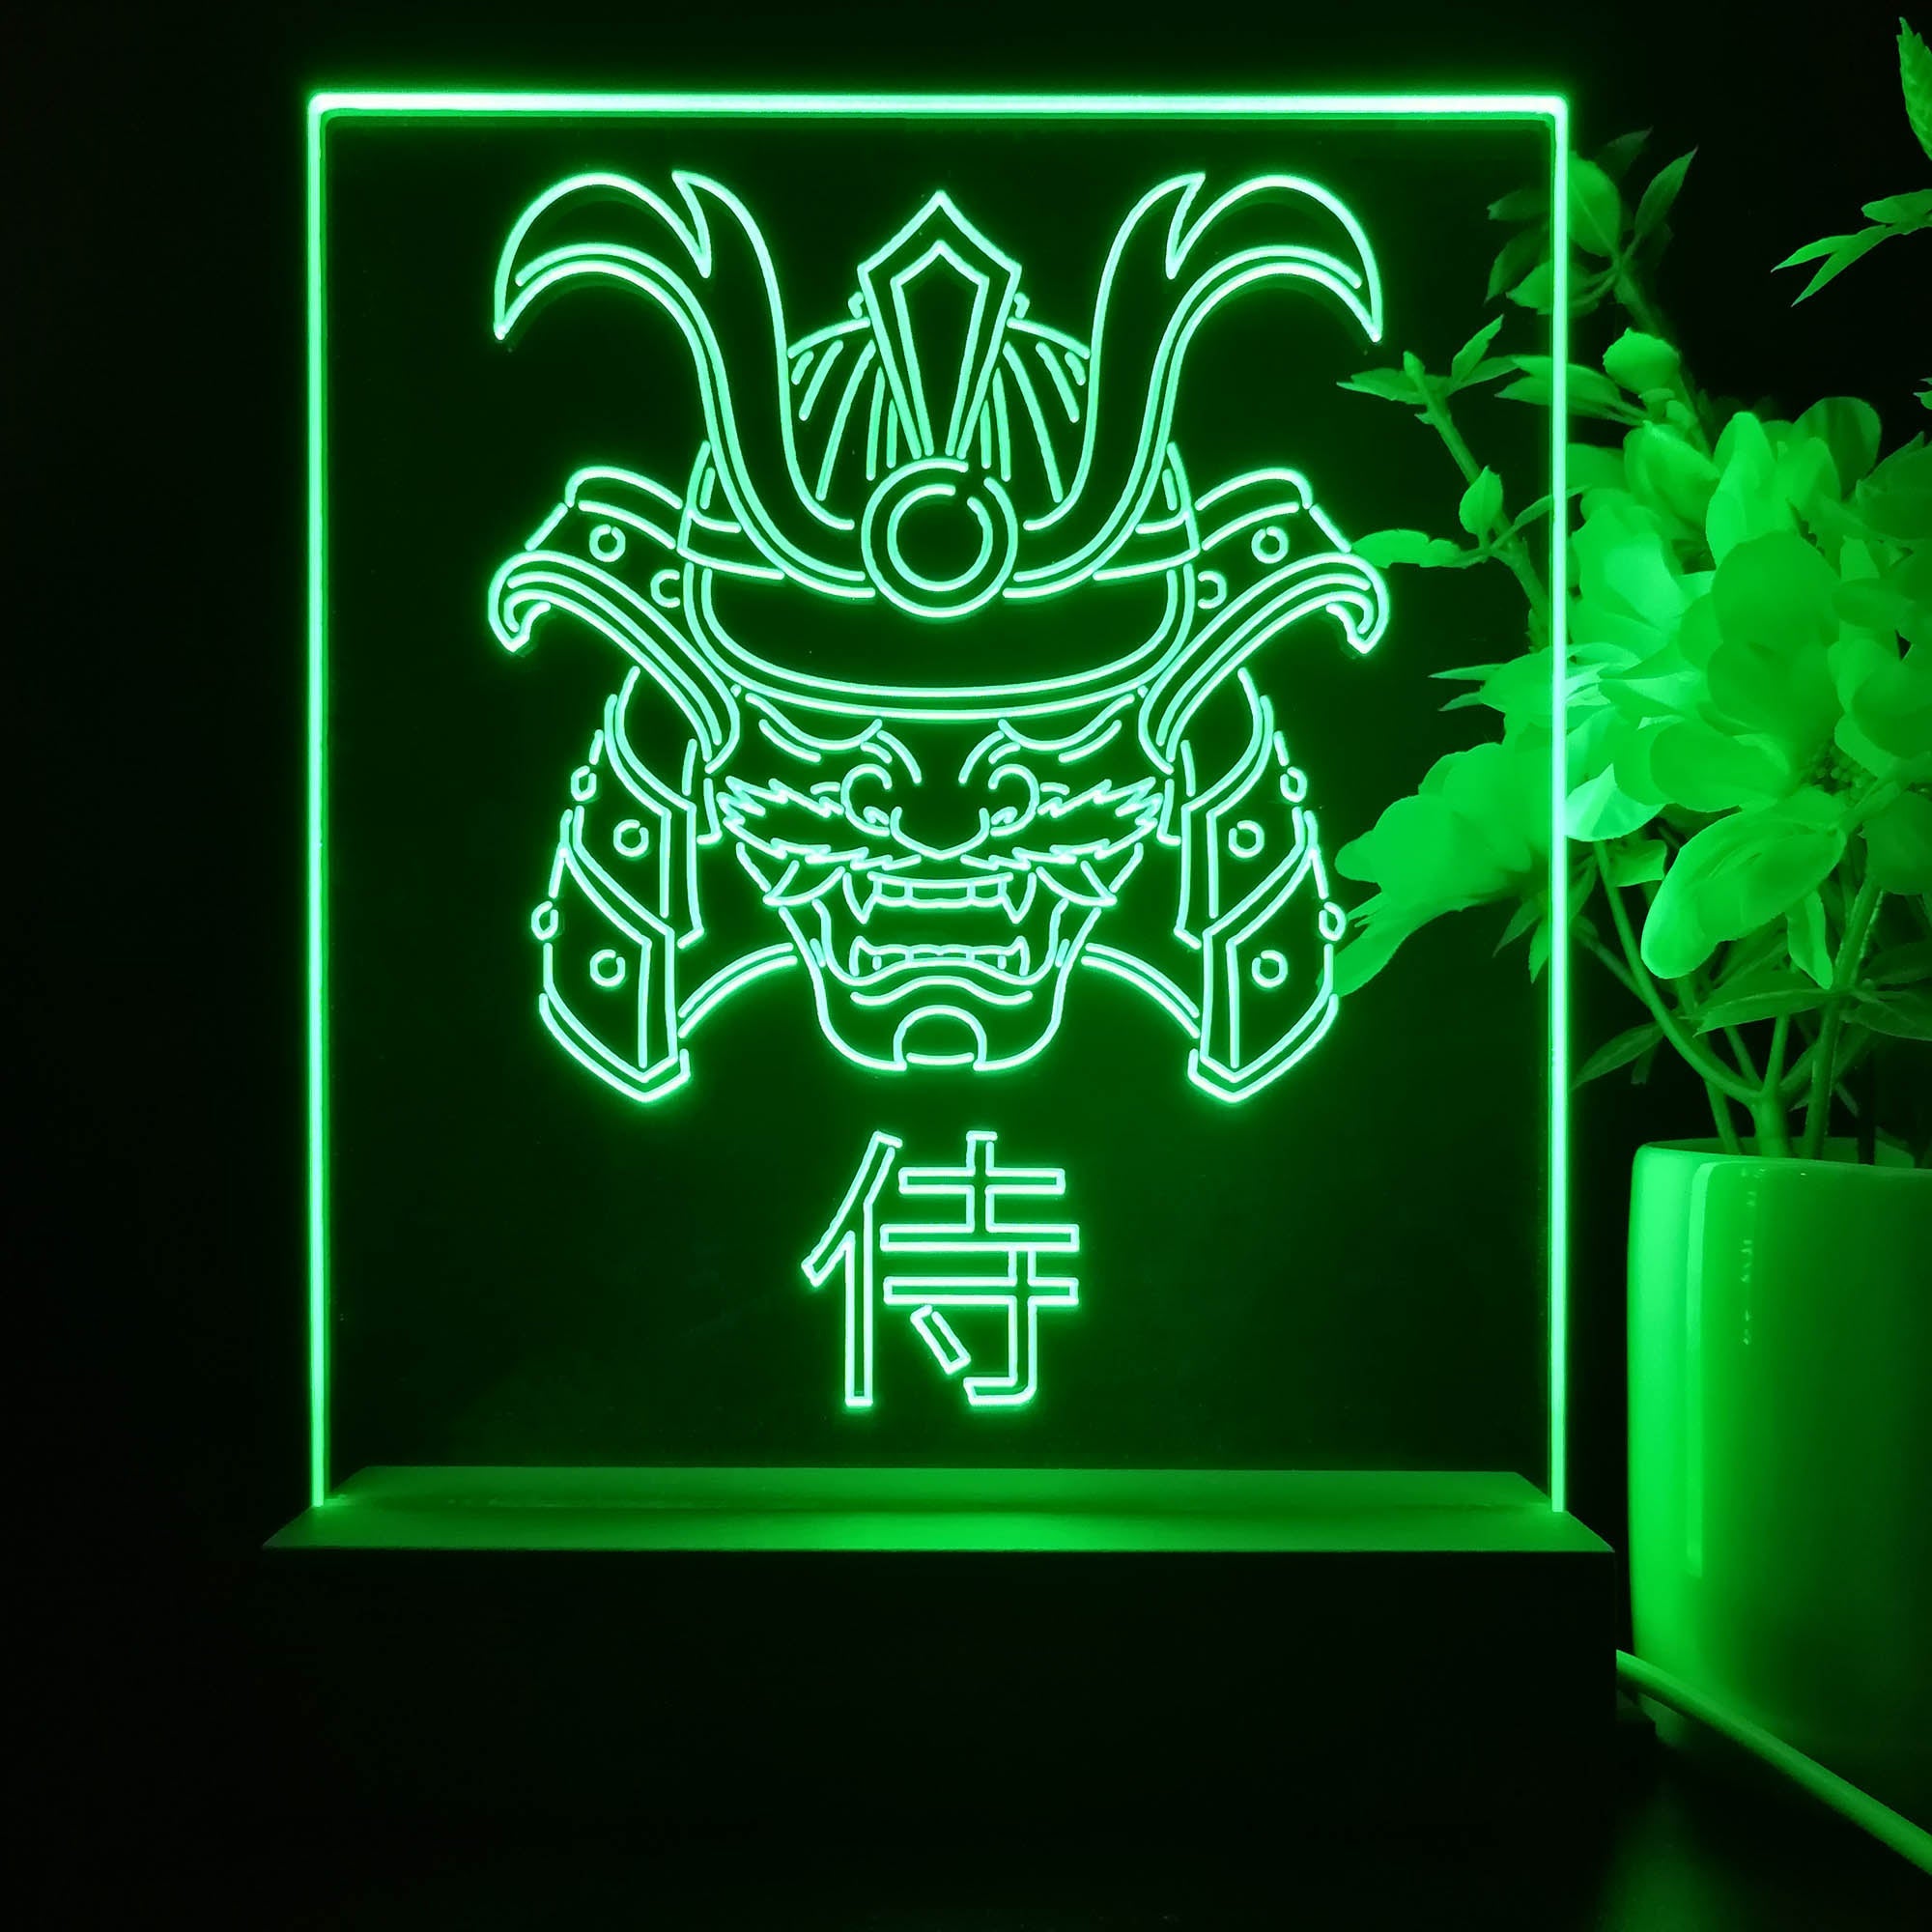 Samurai Game Room LED Sign Lamp Display